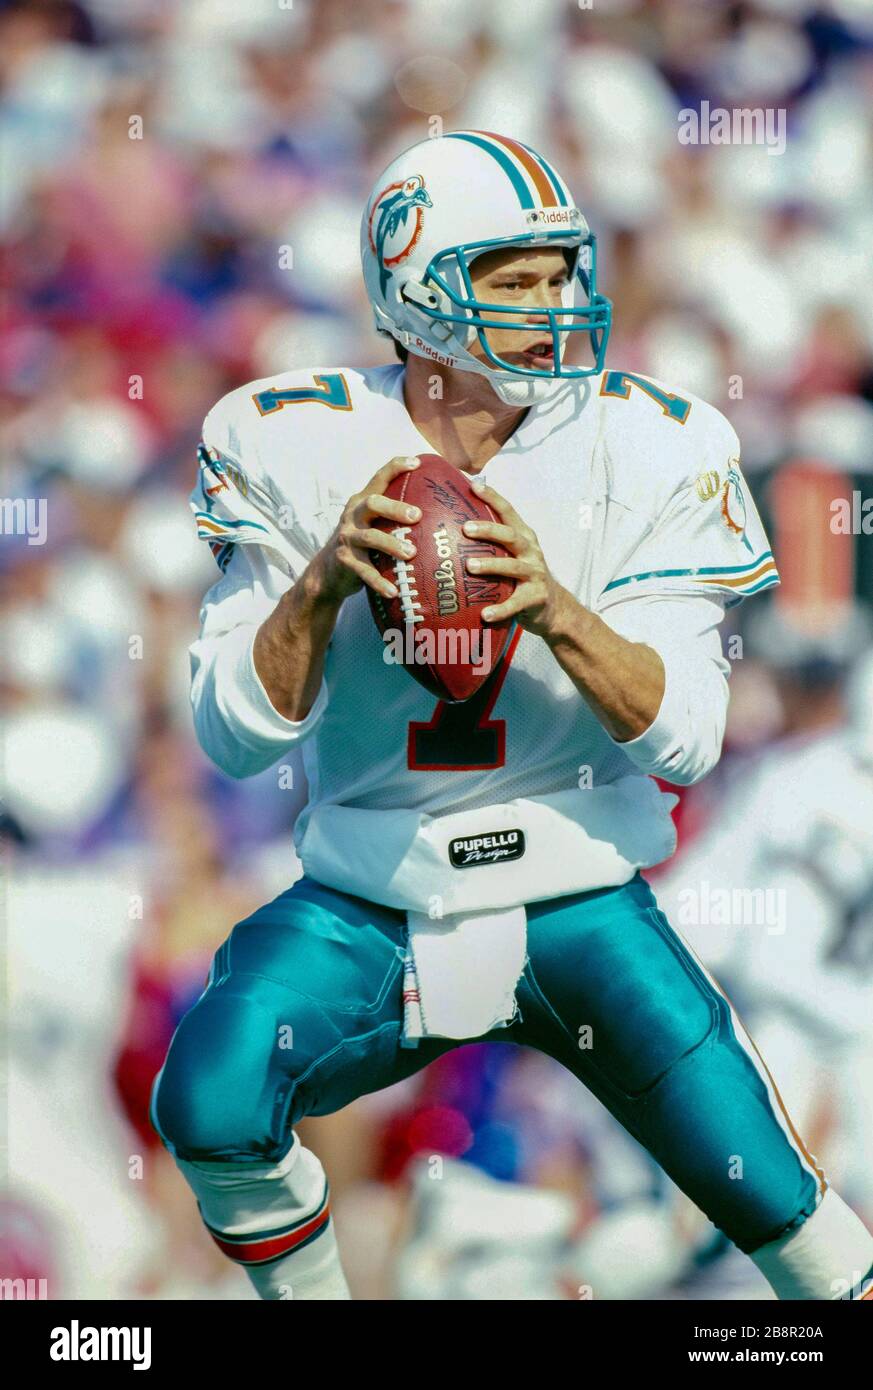 Craig Erickson of the Miami Dolphins Stock Photo